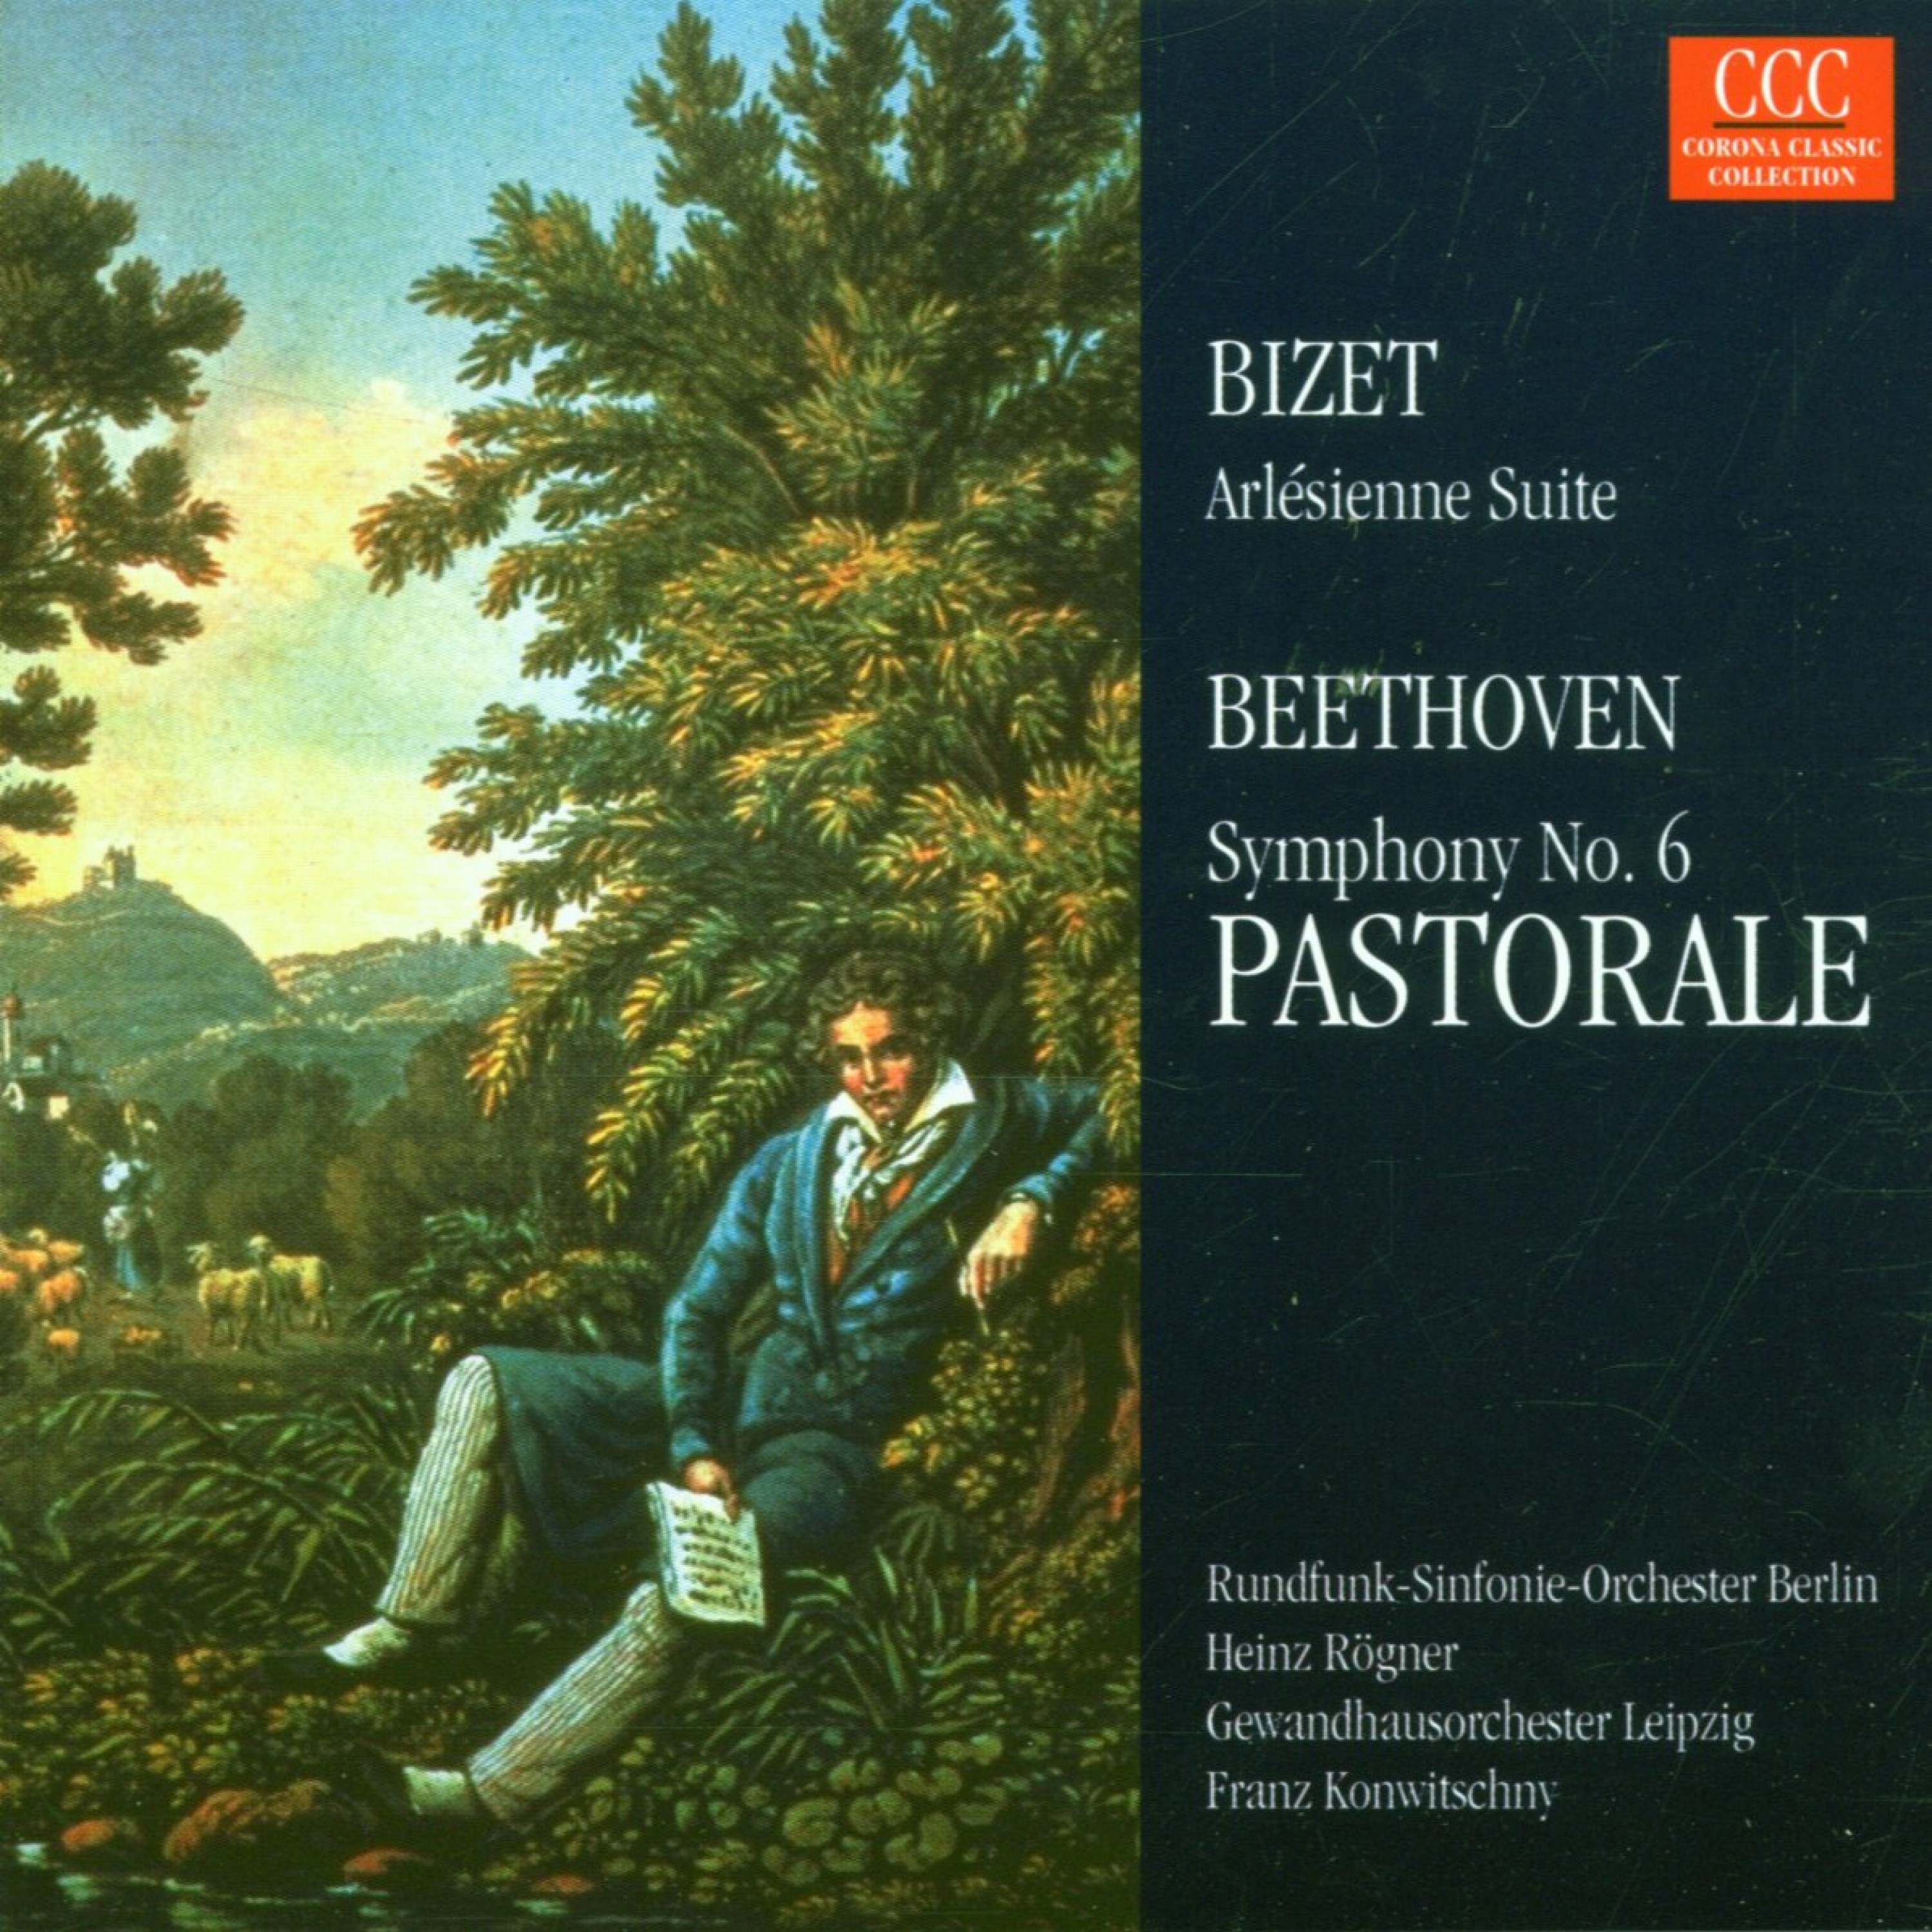 Bizet: L'Arlesienne Suite No. 2 & Beethoven: Symphony No. 6